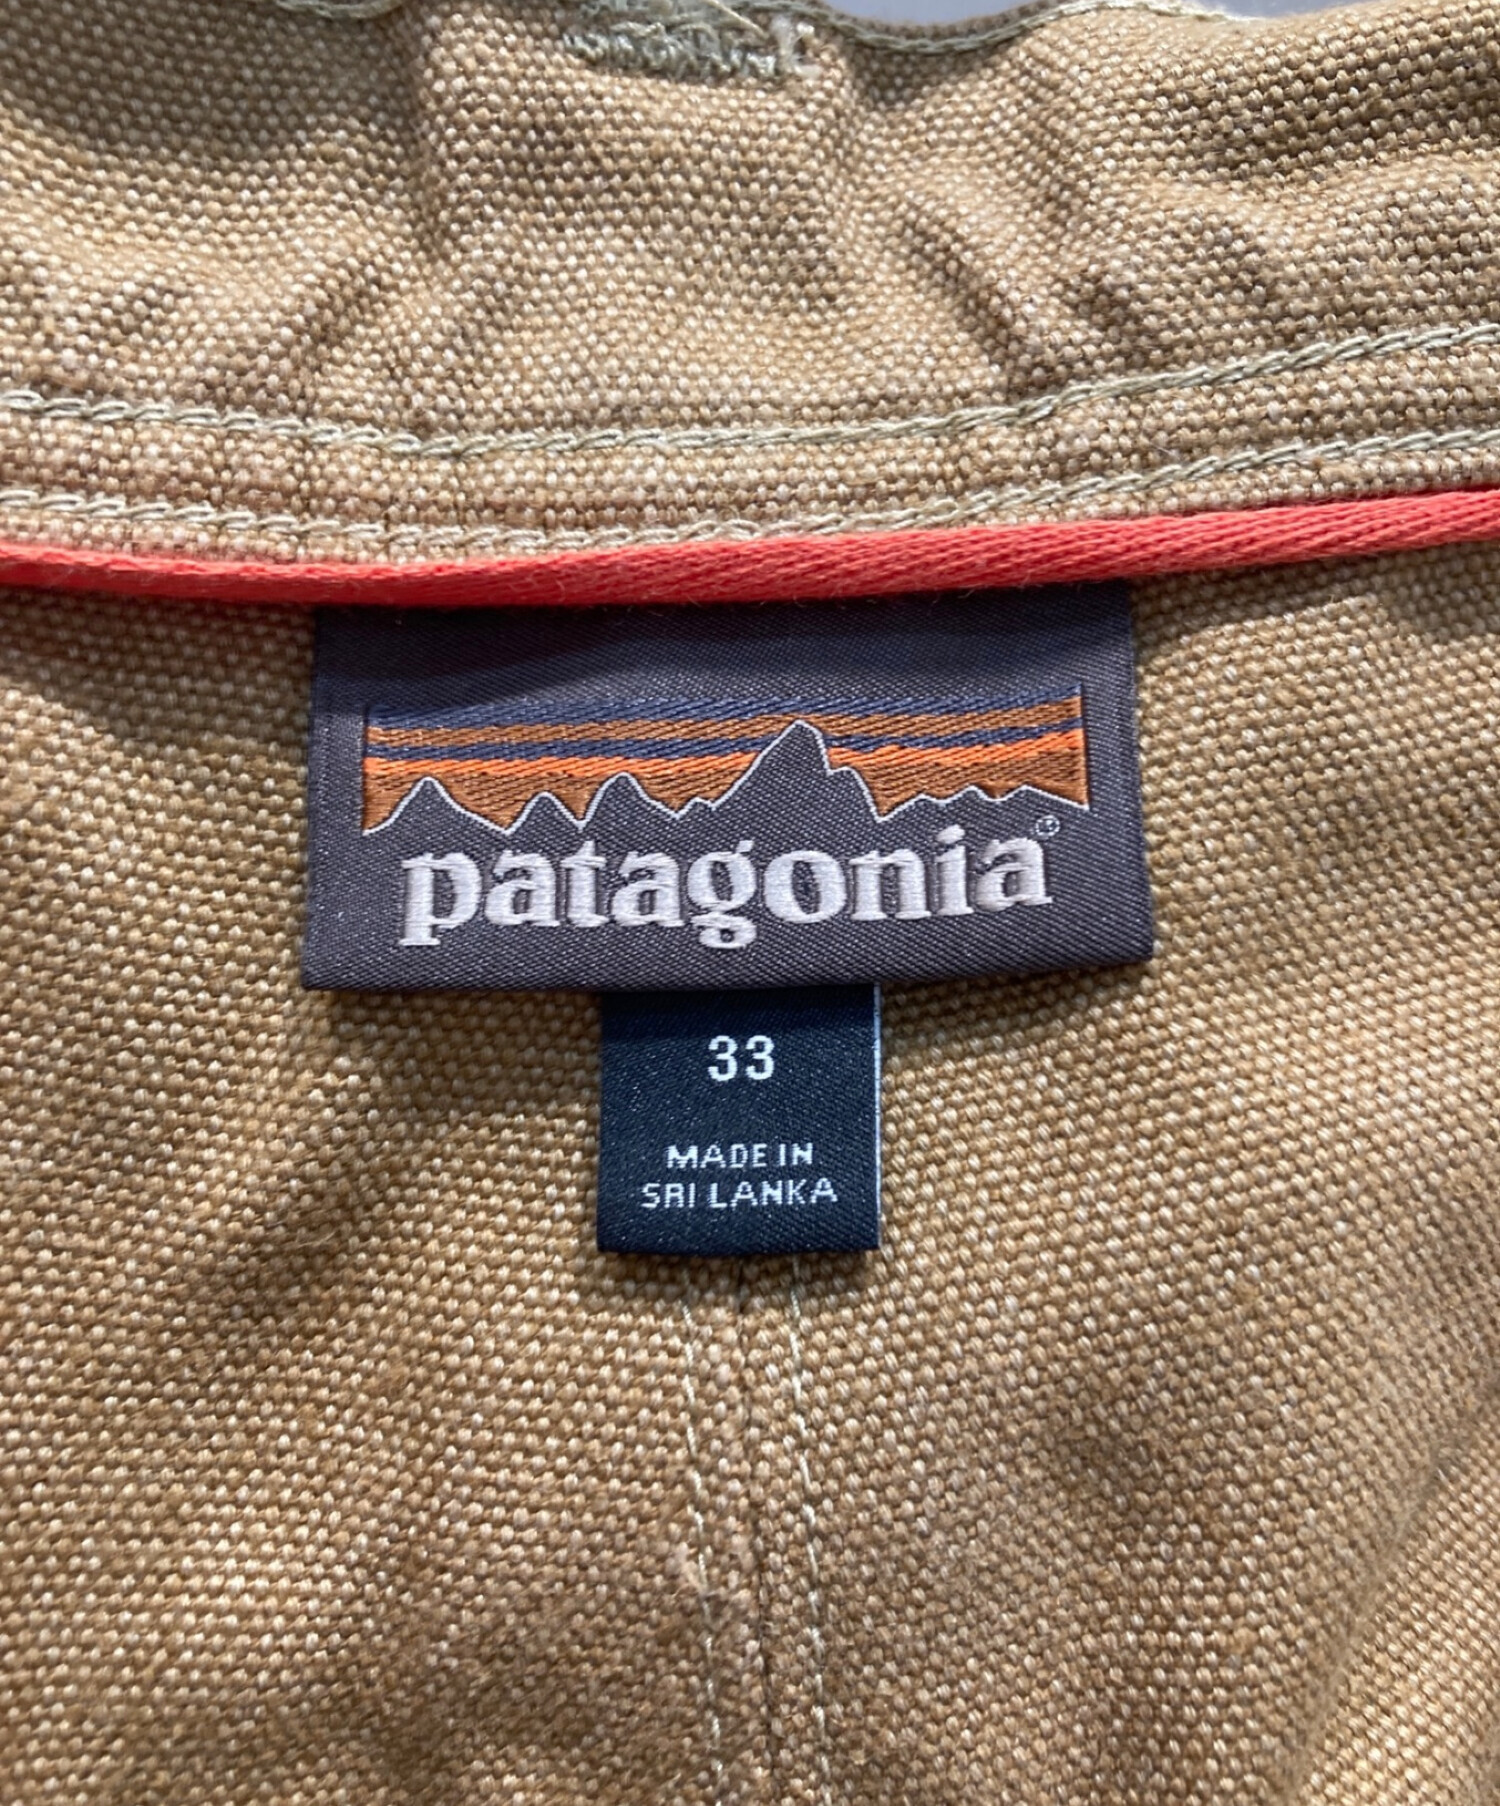 Patagonia (パタゴニア) アイアンフォージヘンプキャンバスダブルニーパンツ ブラウン サイズ:33